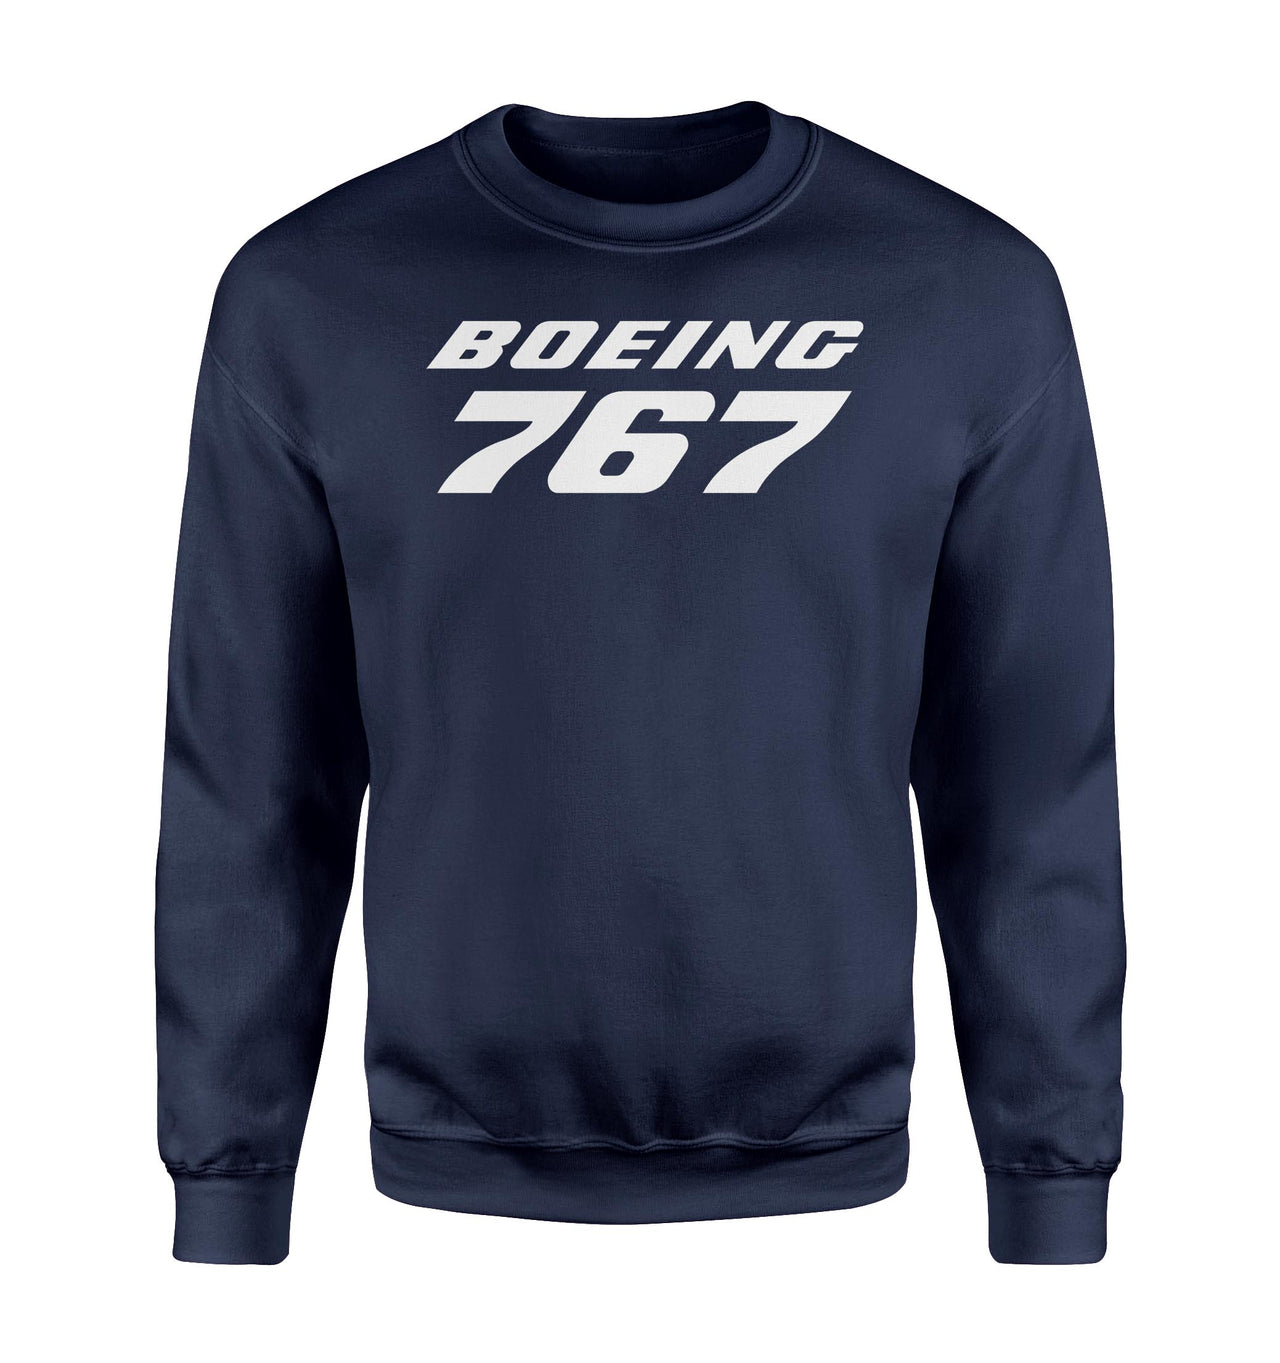 Boeing 767 & Text Designed Sweatshirts